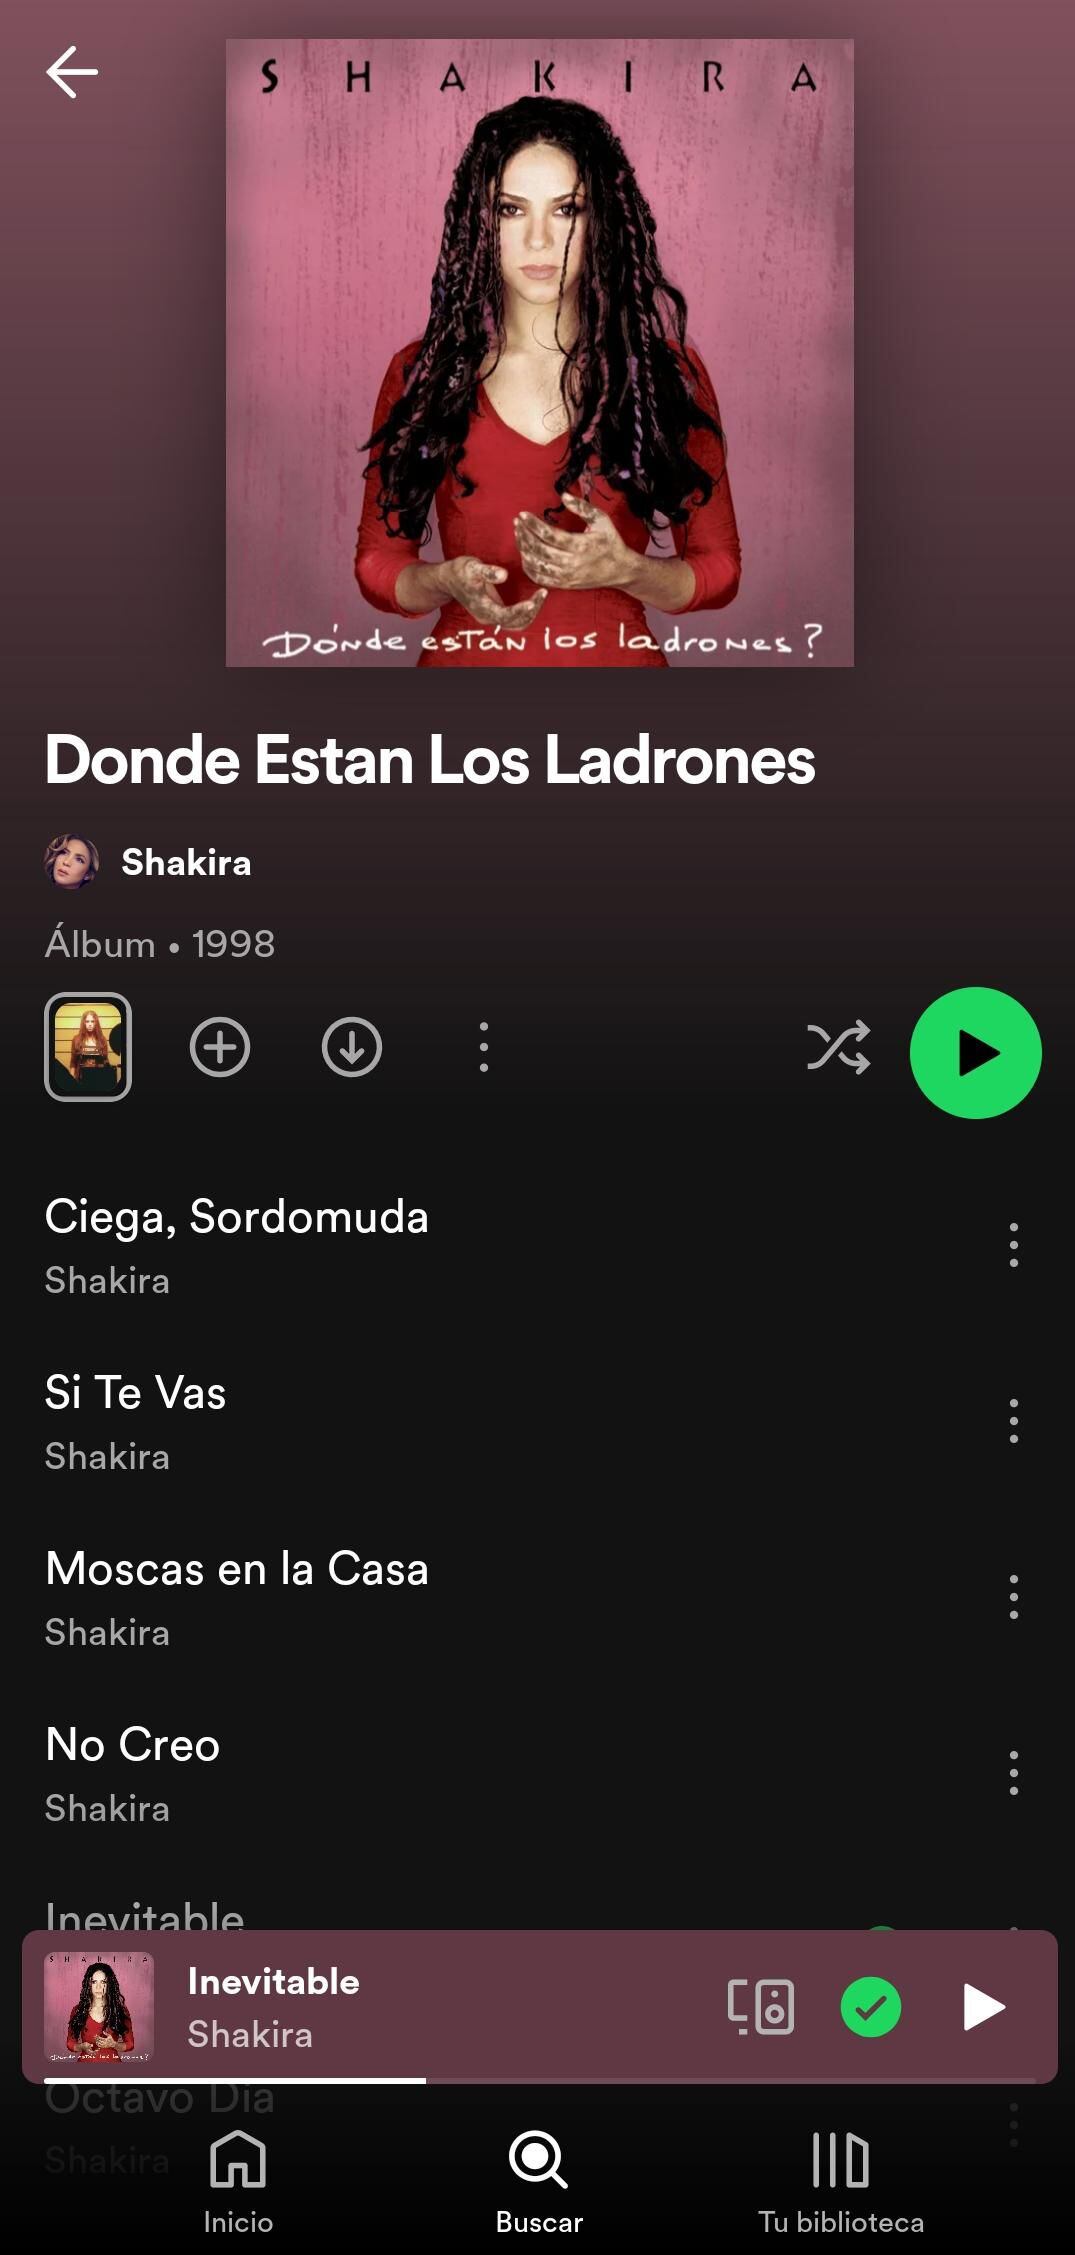 Dónde Están Los Ladrones es un álbum muy importante en la carrera de Shakira. (Spotify)